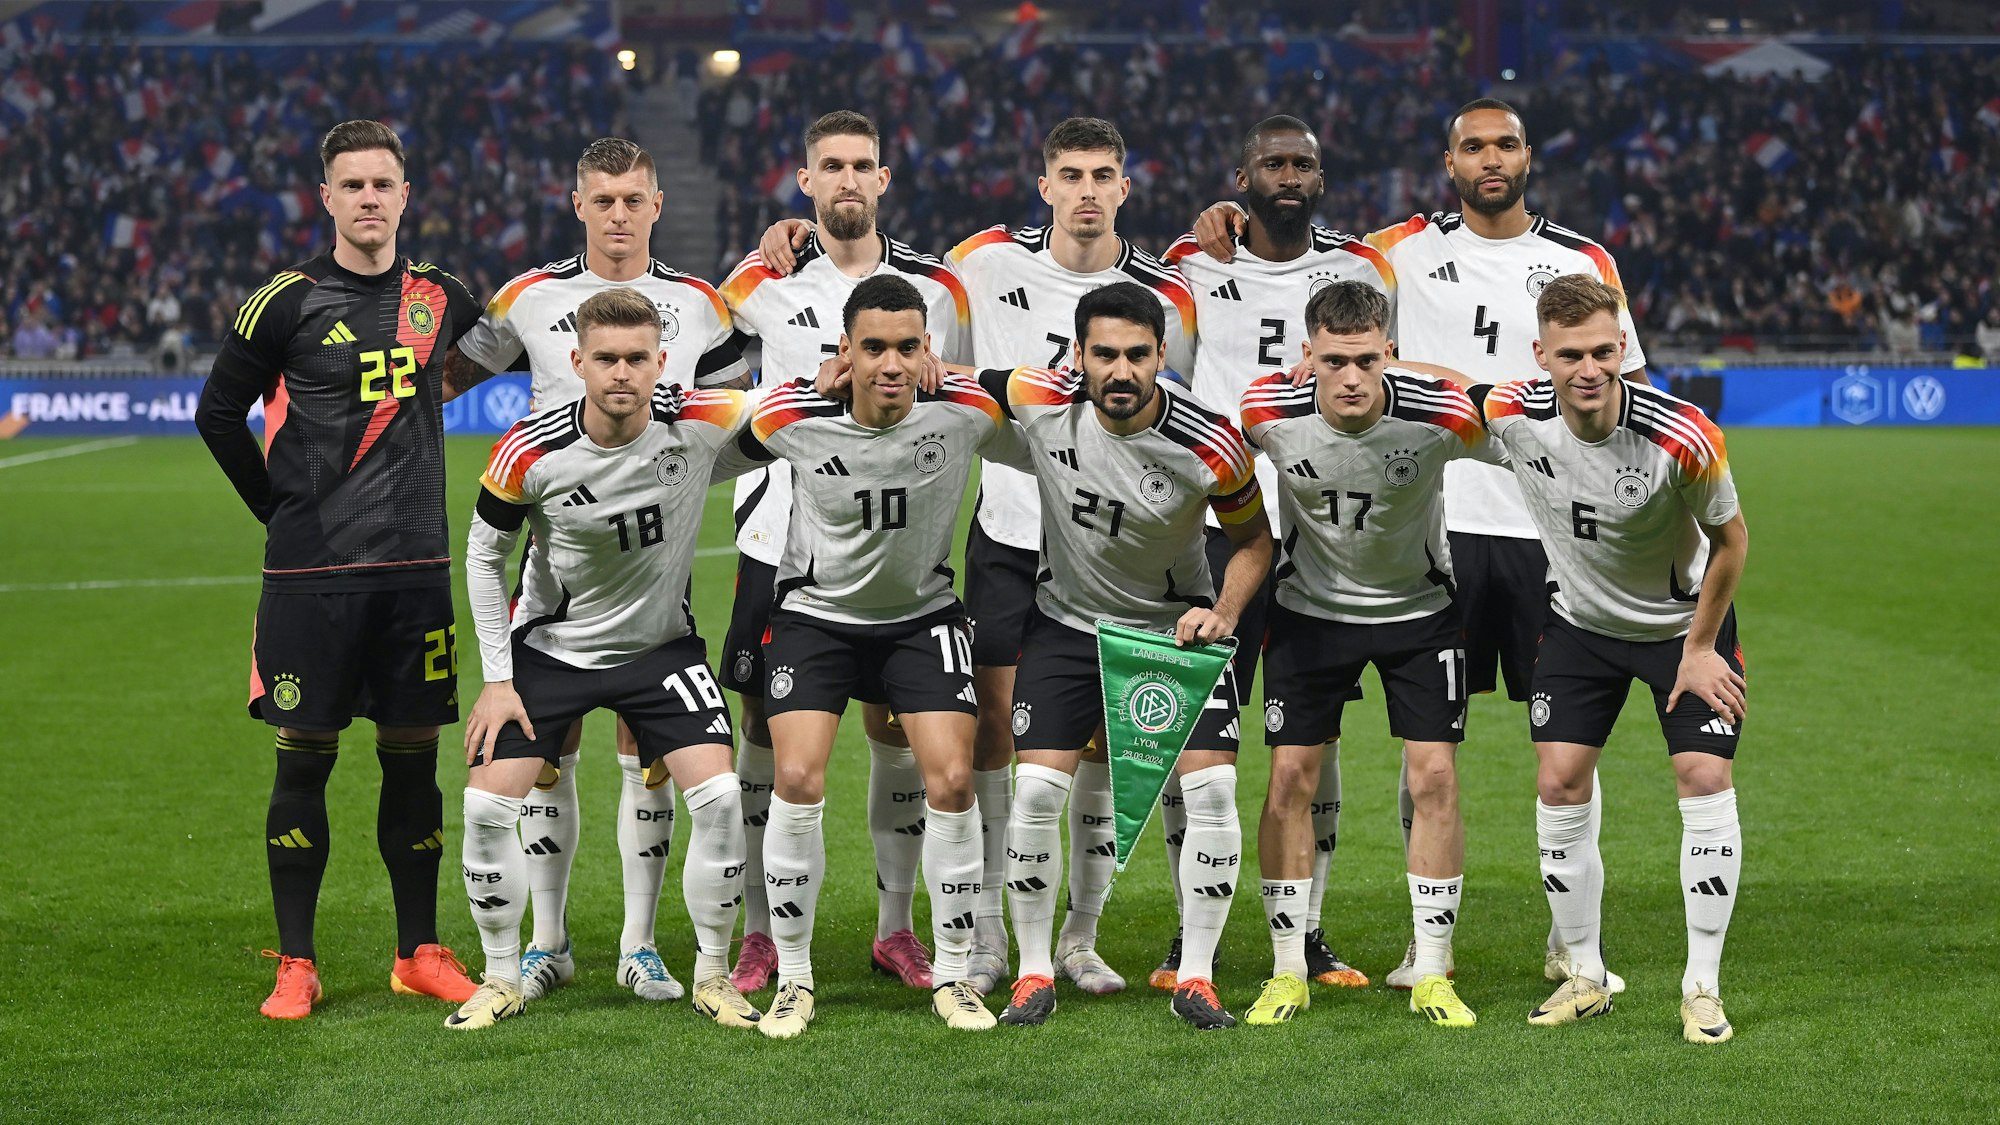 Die deutsche Fußball-Nationalmannschaft posiert vor dem Länderspiel in Lyon gegen Frankreich auf dem Rasen.